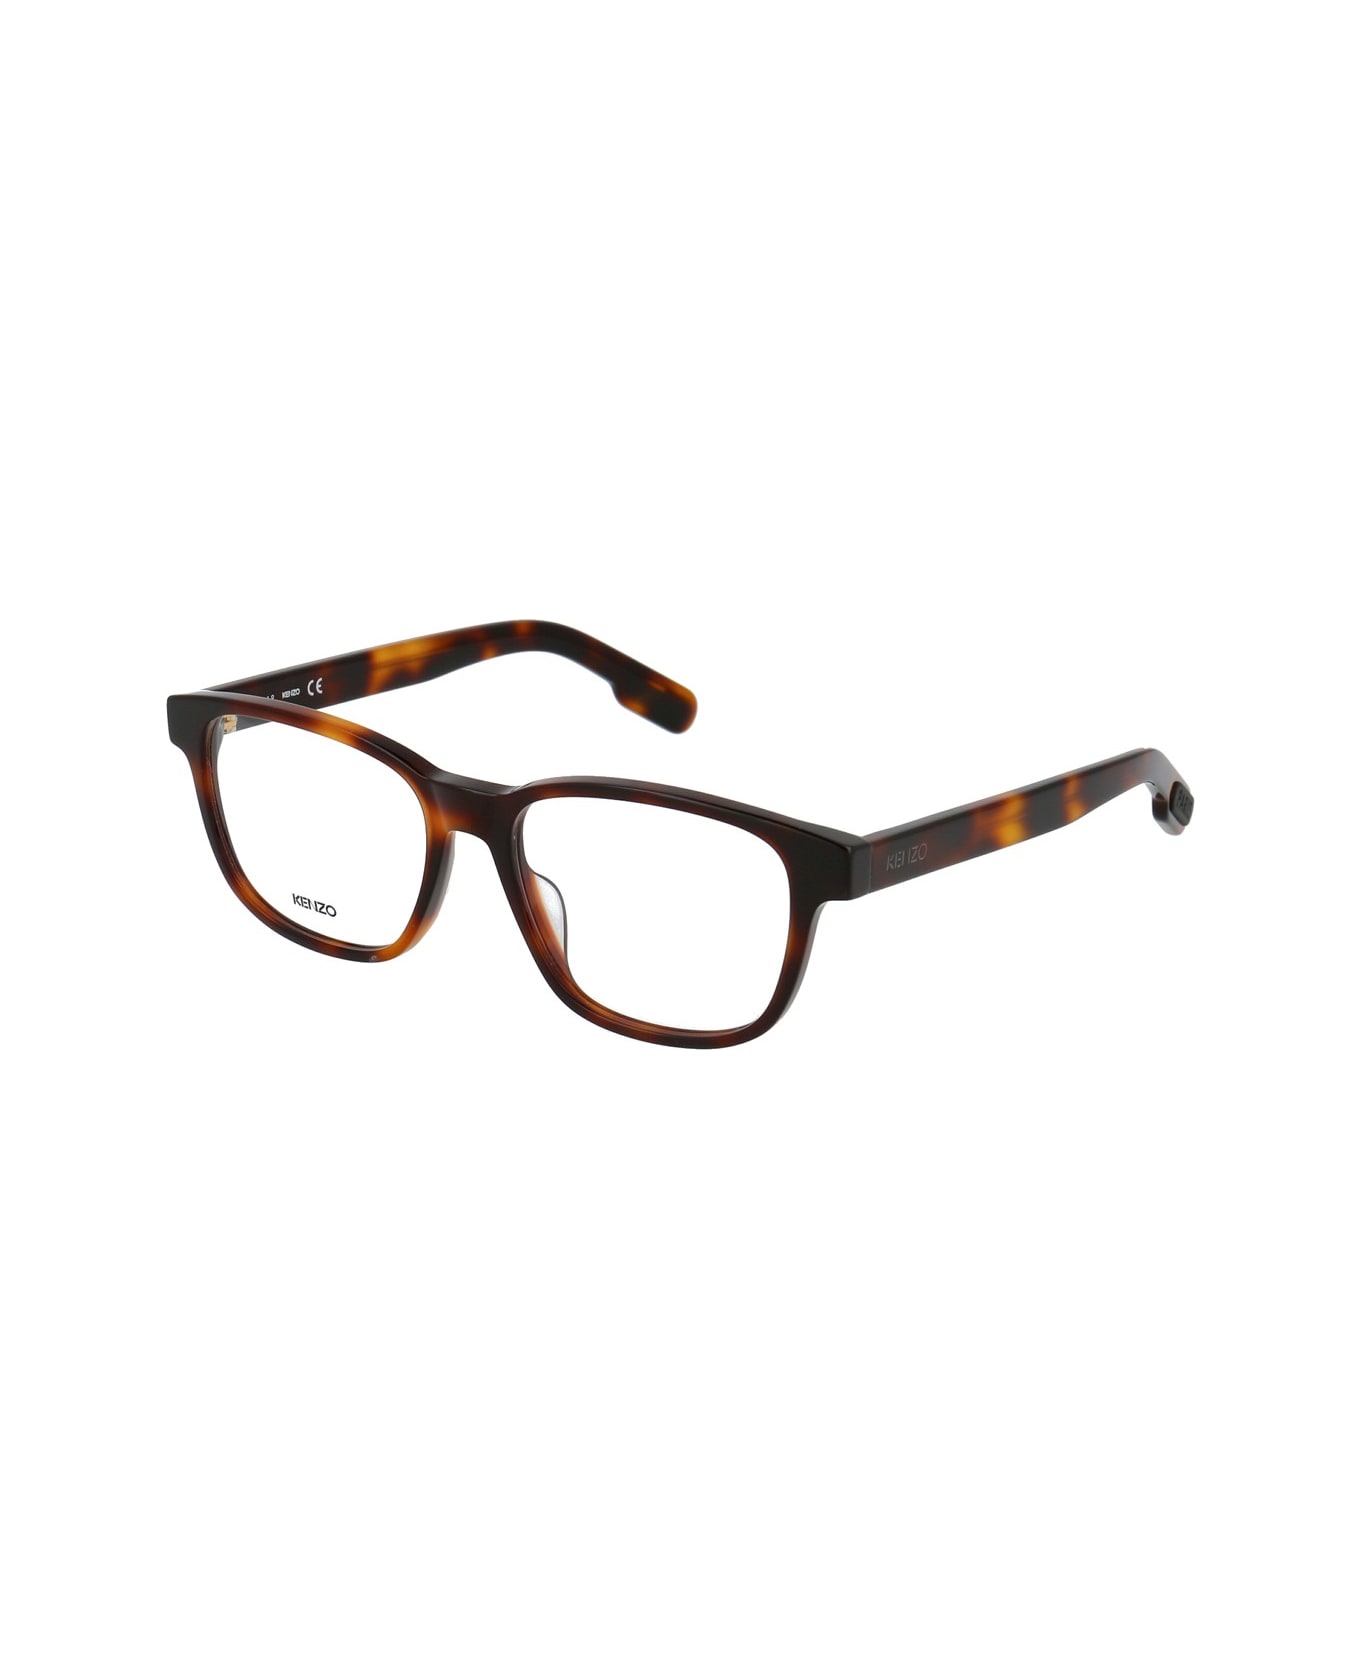 Kenzo Kz50026i Glasses - Marrone